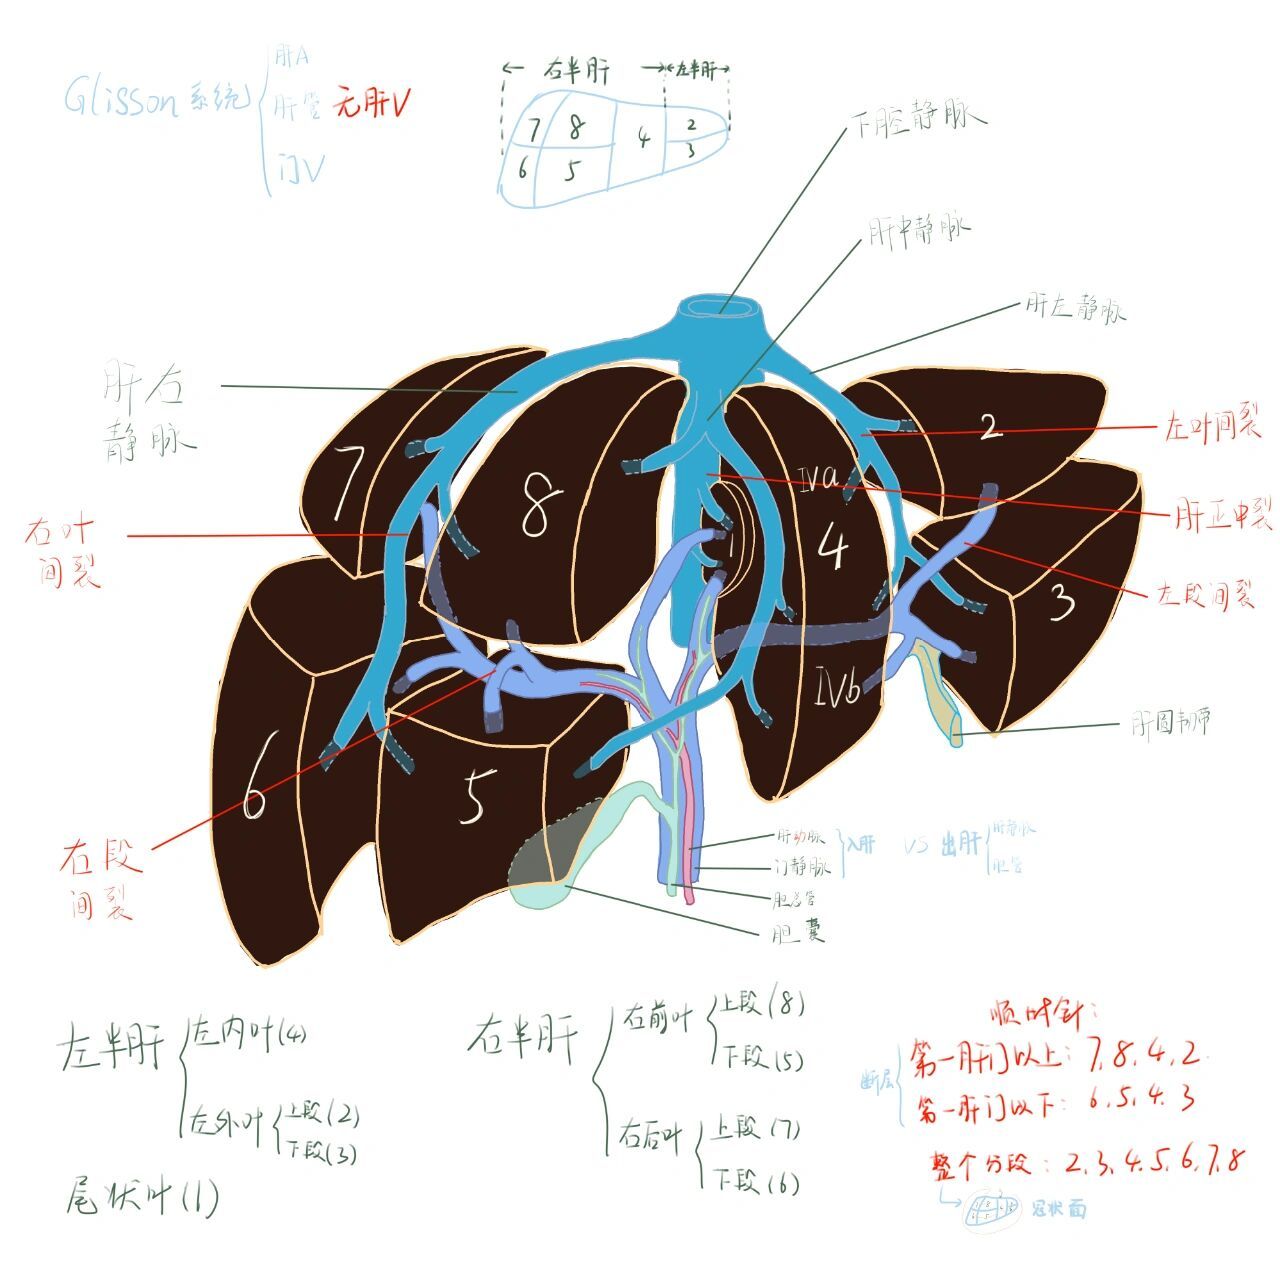 肝脏分段解剖图及要点